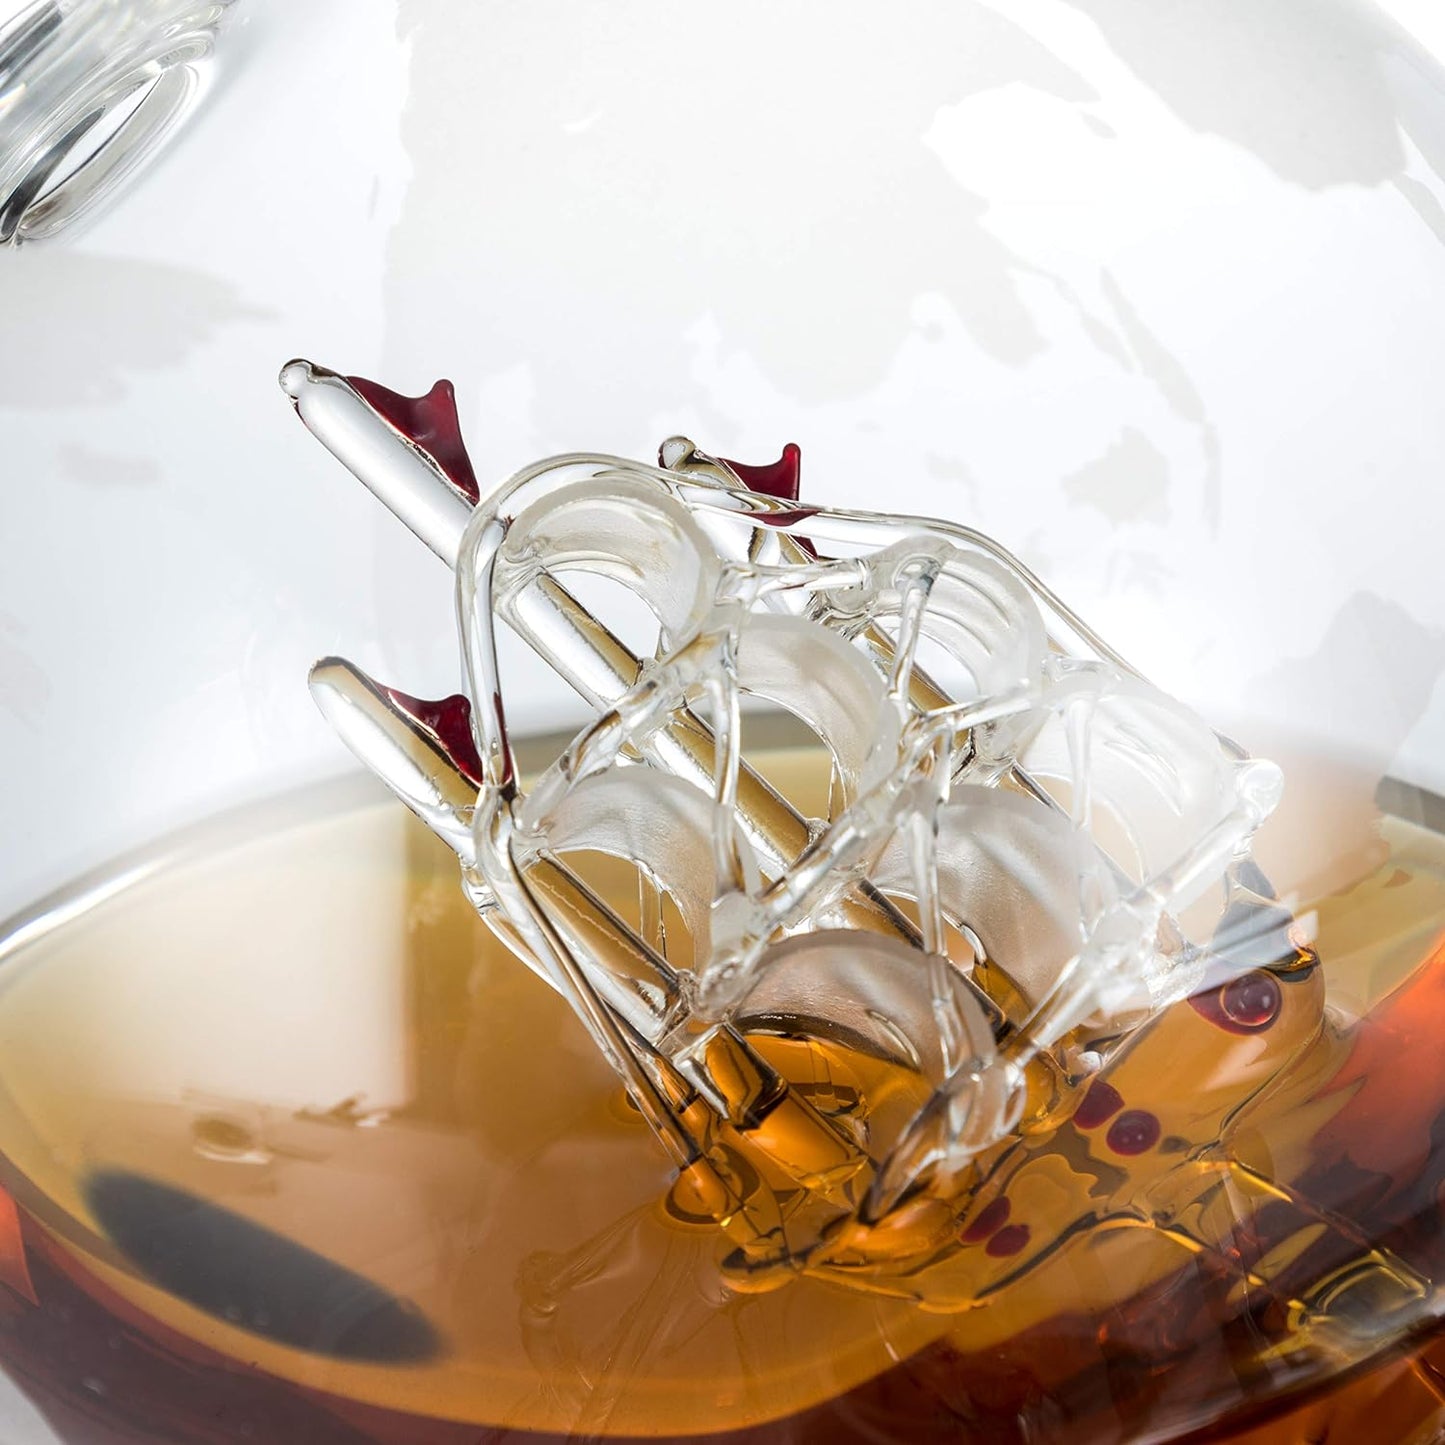 Whiskey Dekanter Set,Globus Dekanter,Whiskey  Mit 2 Gläsern,Perlen 4 Eiswürfel Zange & Trichter Getränkespender Für Whisky Likör Wein Brandy Cognac